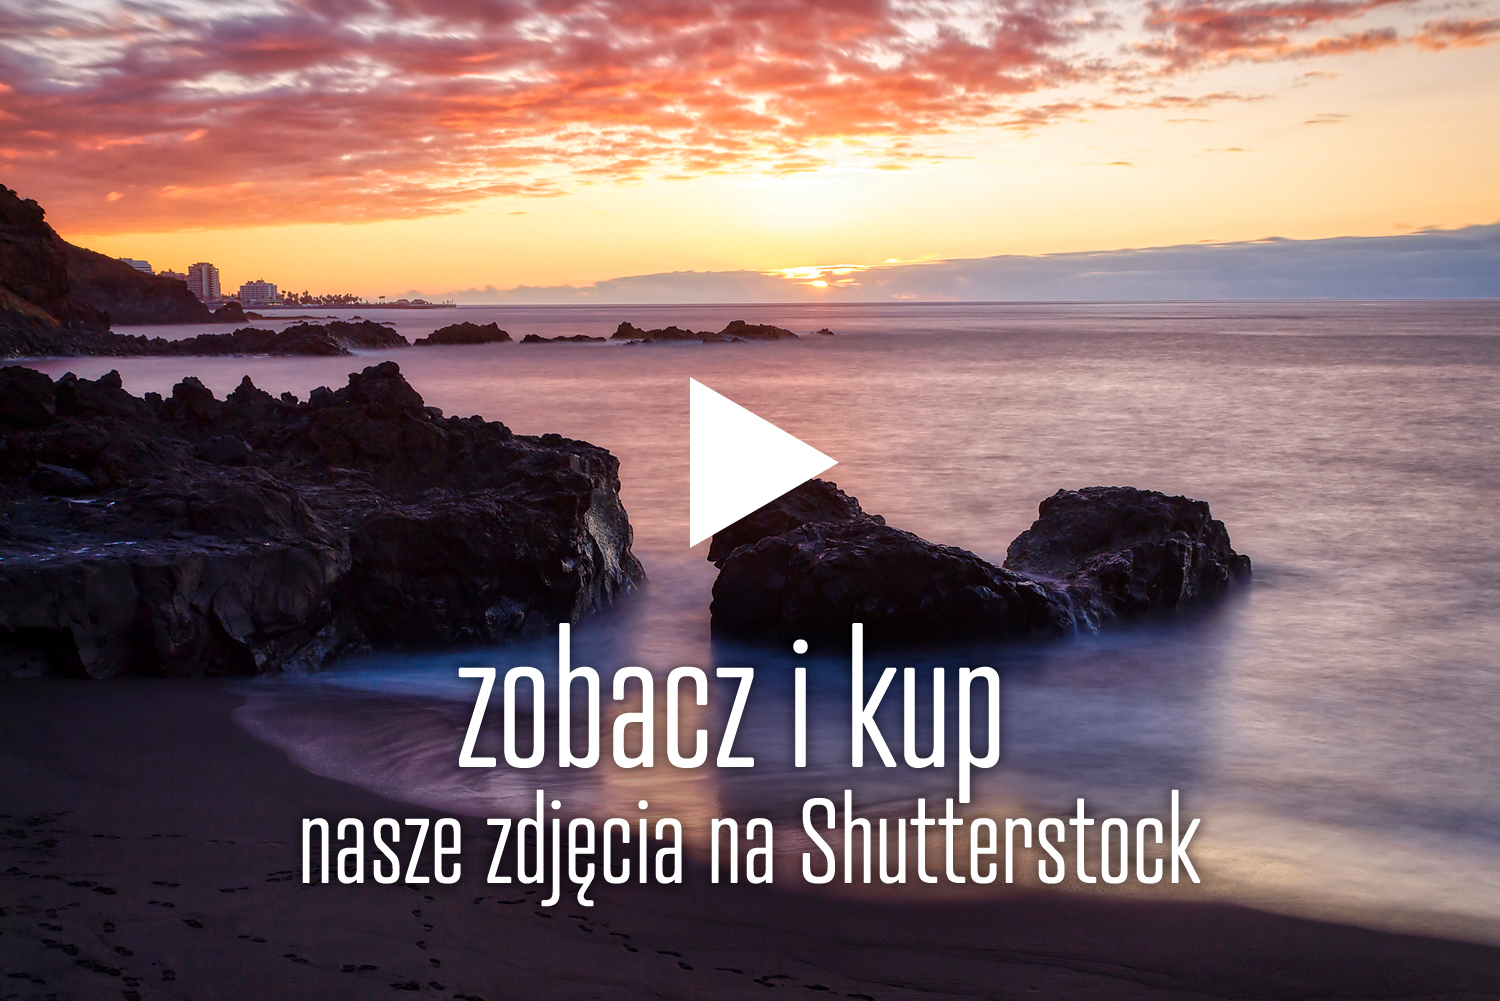 zdjęcia Shutterstock